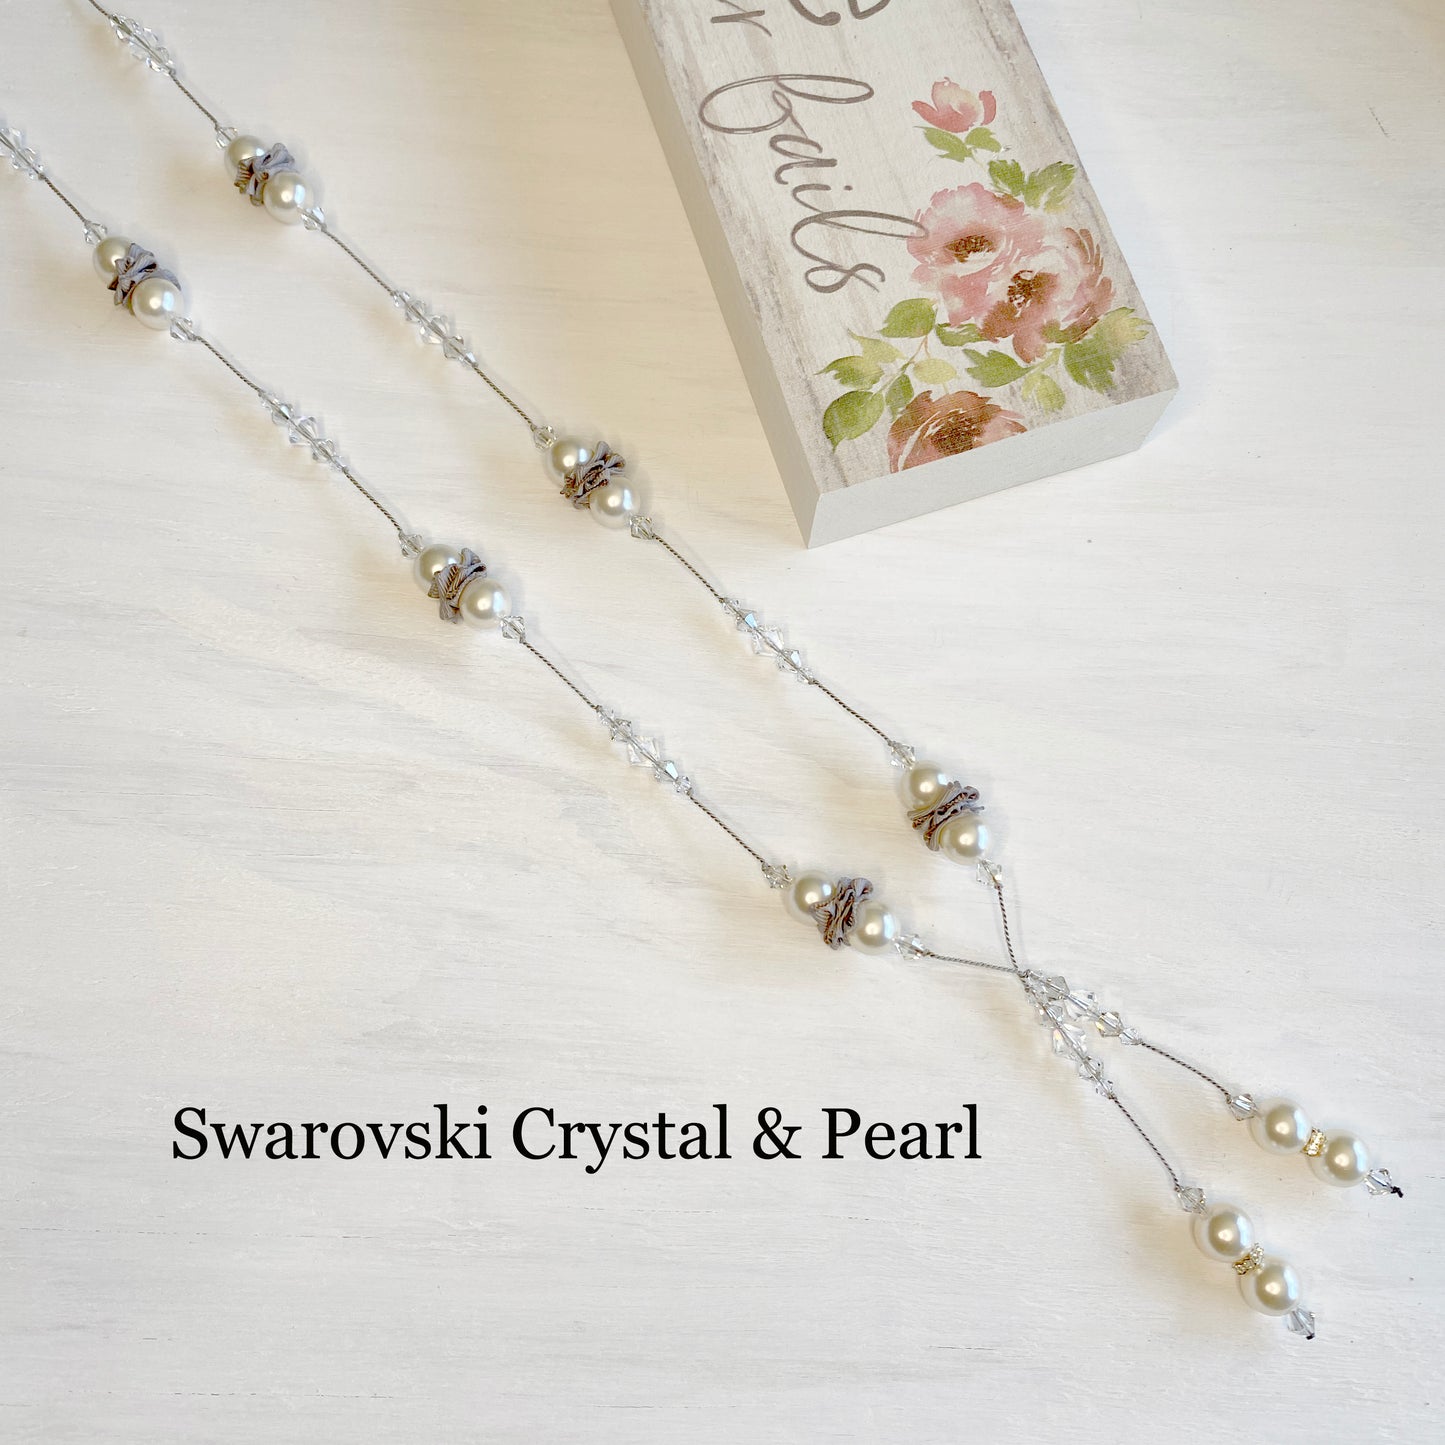 Swarovski Crystal & Swarovski Pearl